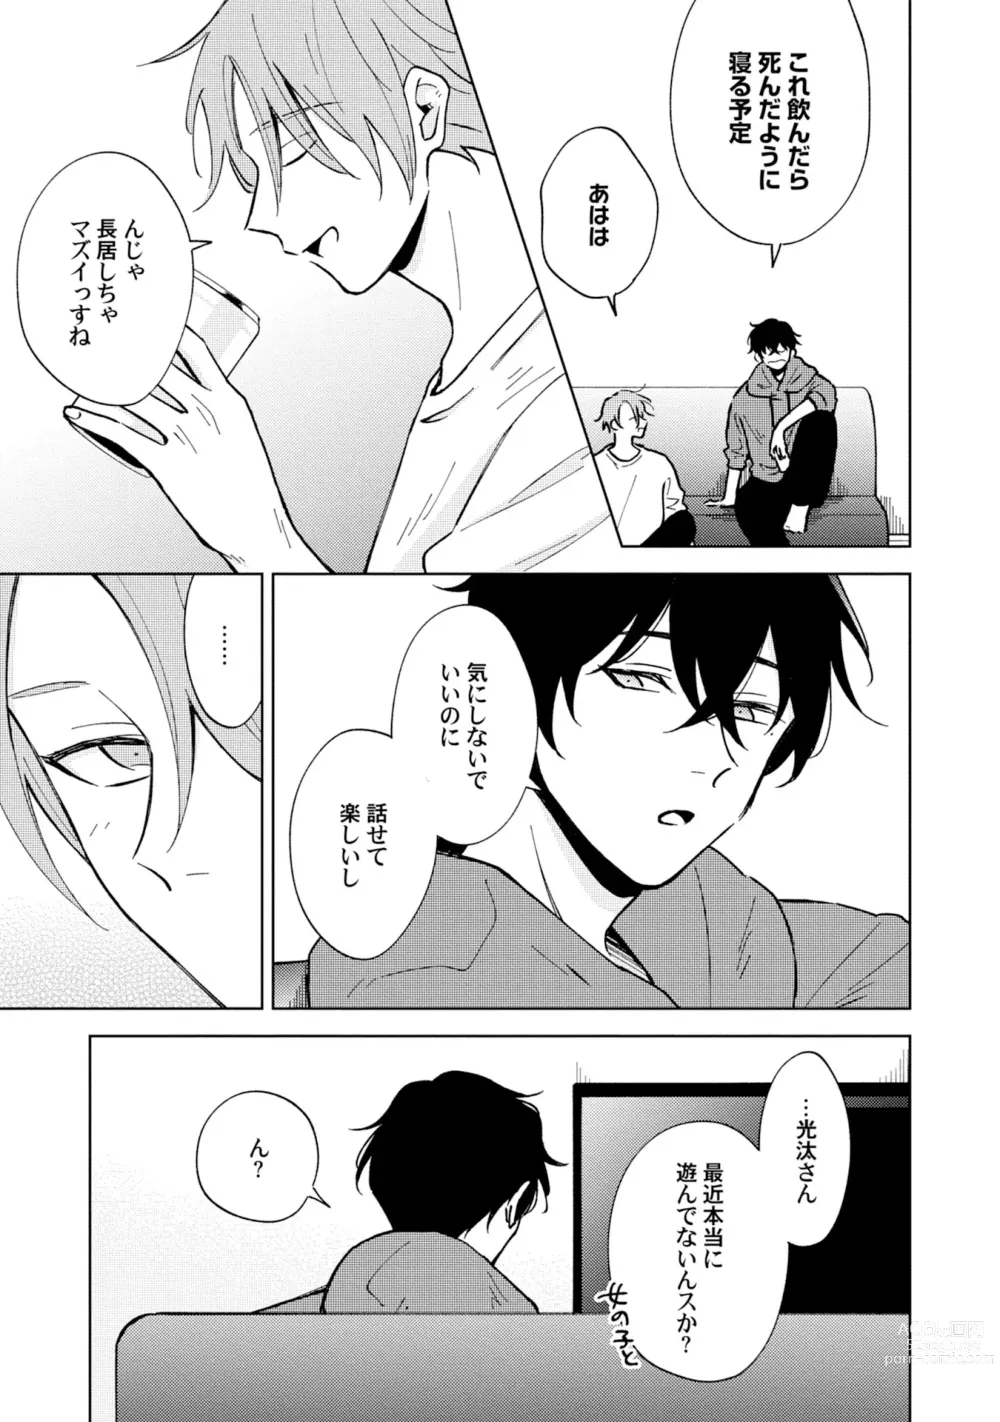 Page 21 of manga Toho 3-byou no Trouble Love Room 3